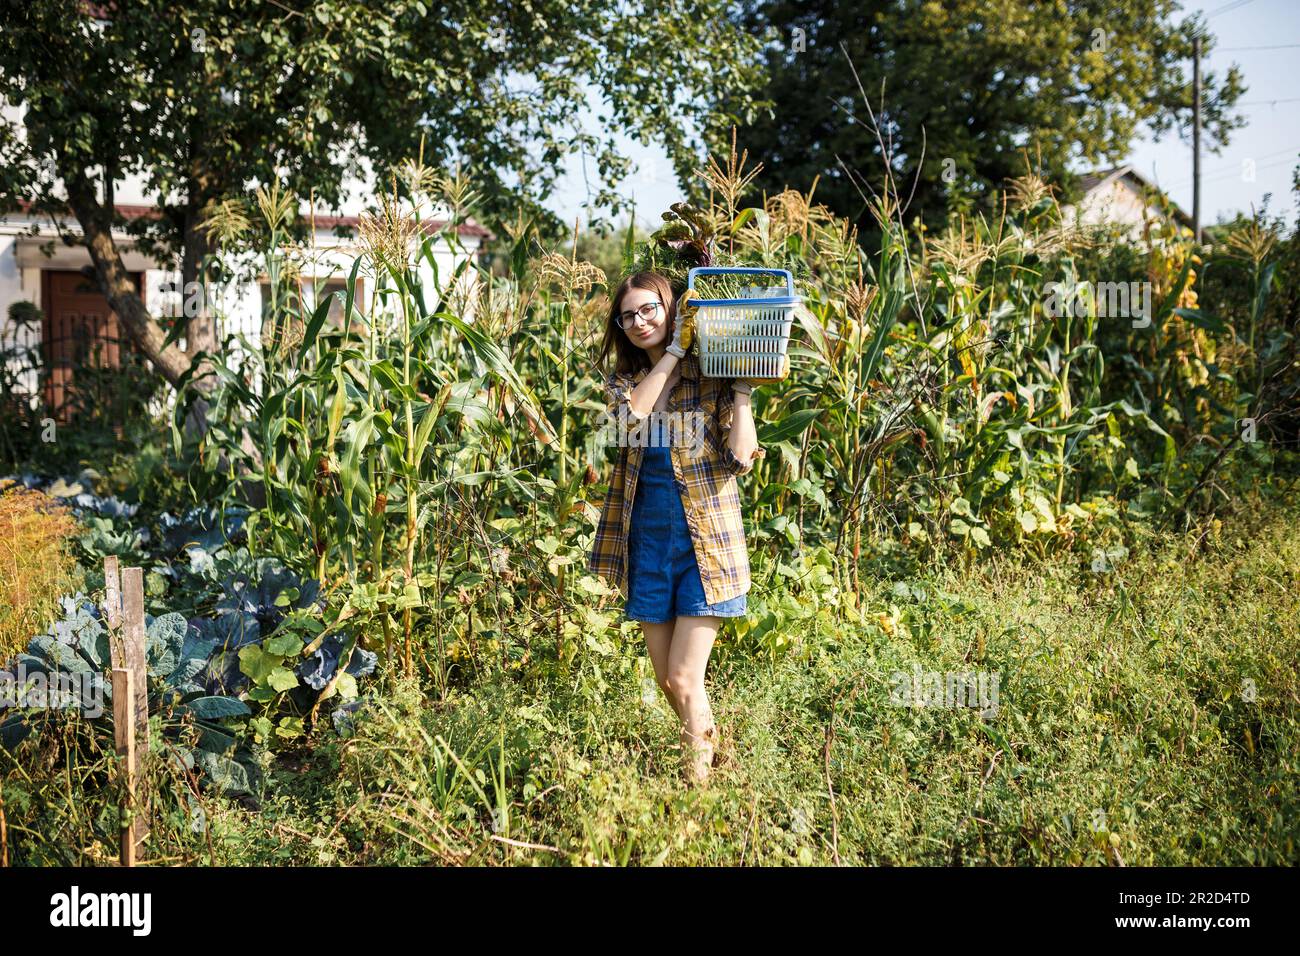 The farmer girl holding basket full of vegetables on green farm Stock Photo